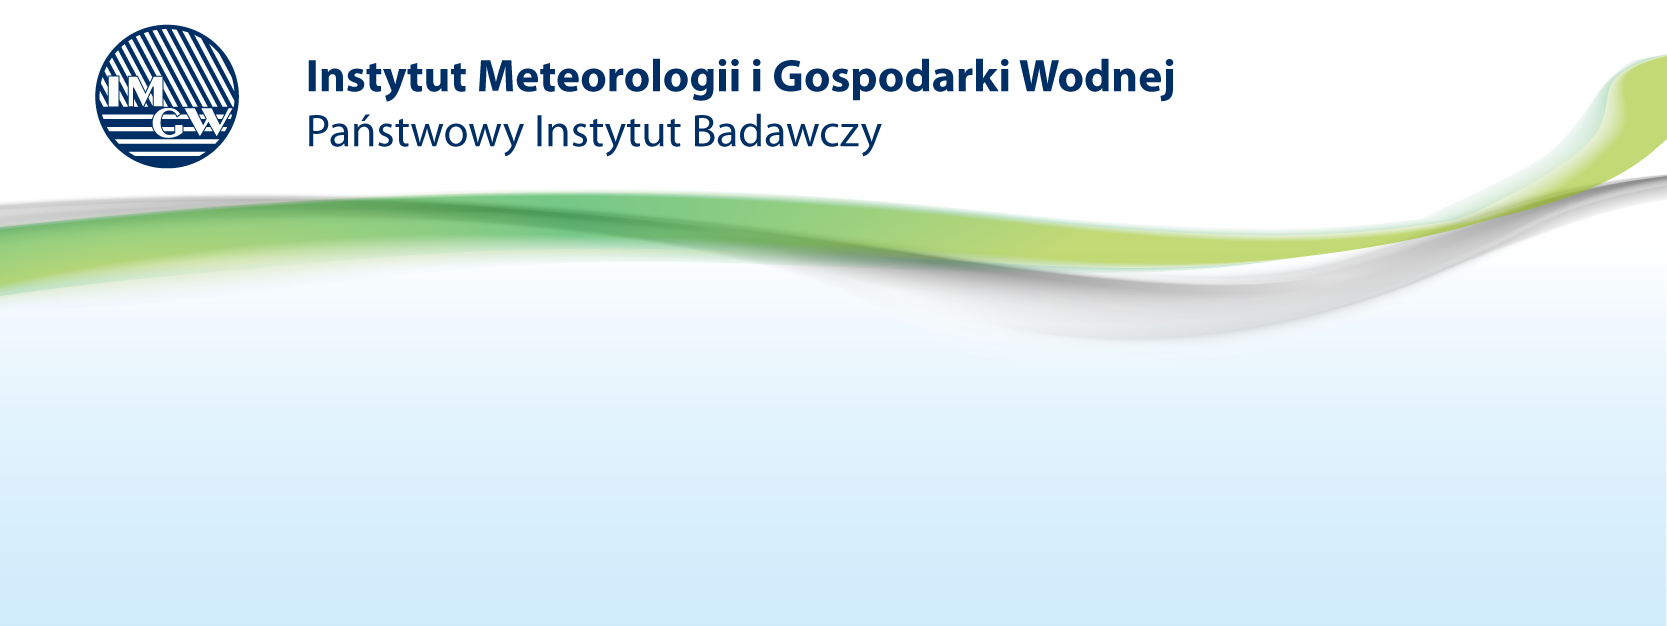 Monitor ujęć wód, jako narzędzie służące monitorowaniu zagrożenia Magdalena Kwiecień, Beata Mucha, Grzegorz Słota, Tomasz